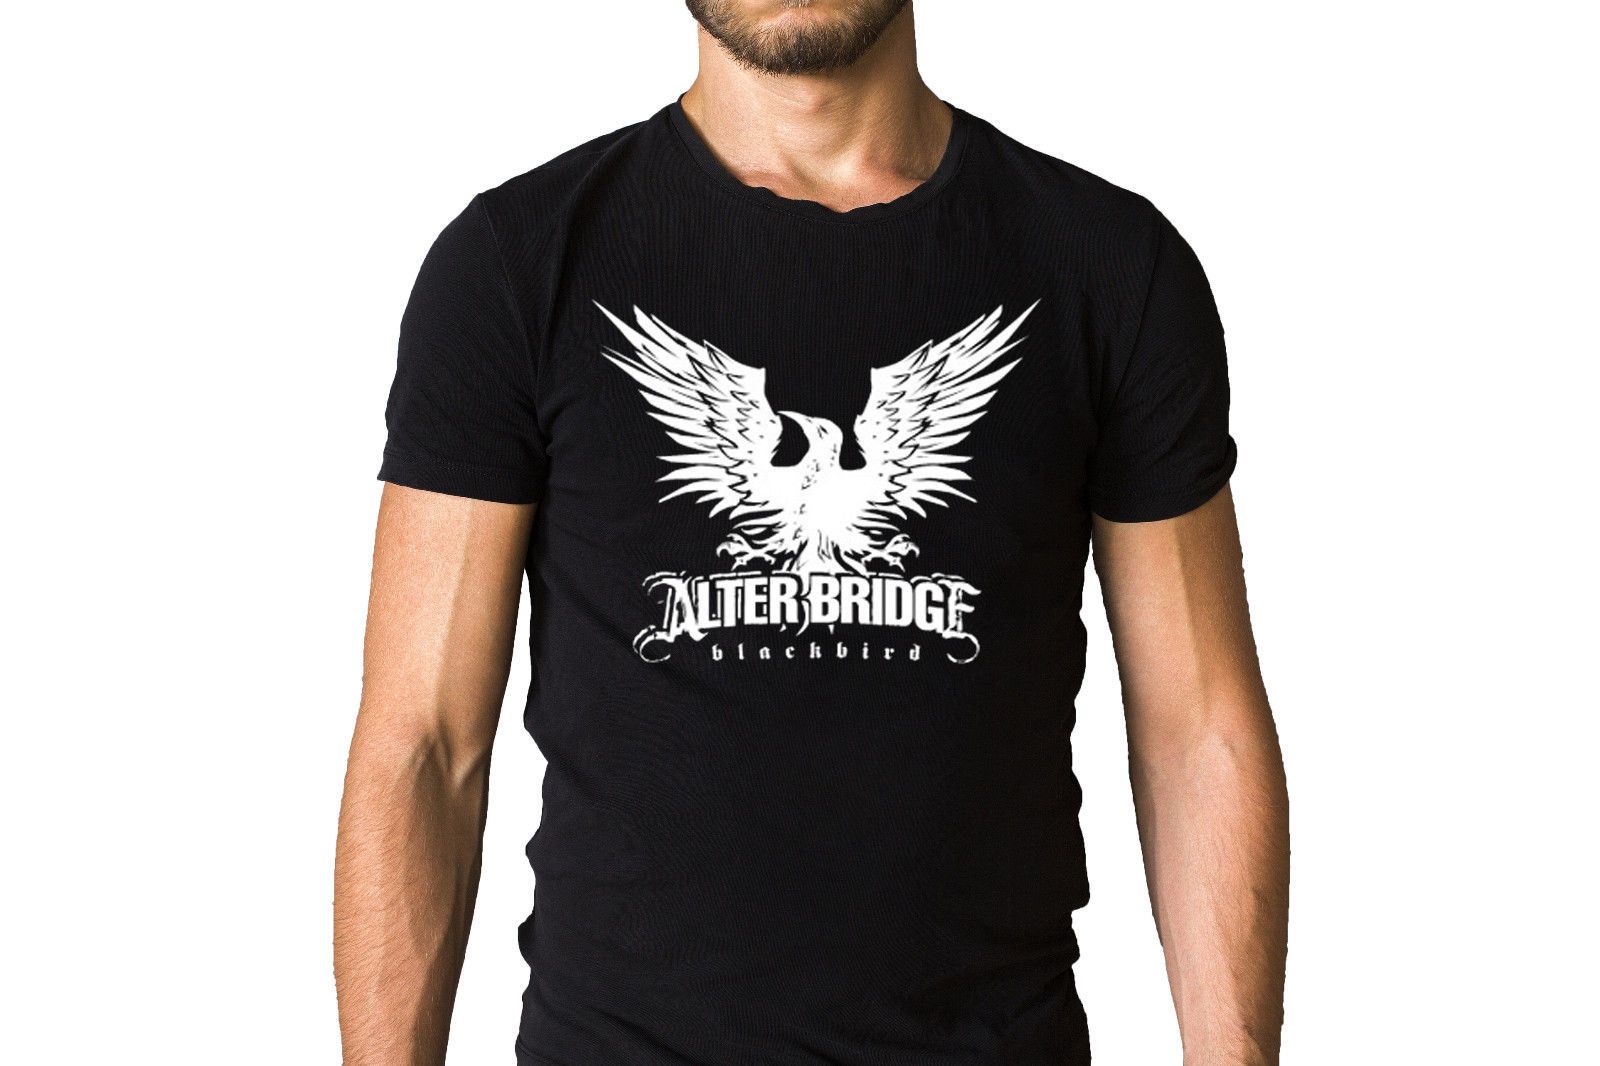 Alter Bridge Blackbird Logo T Shirt Shirts Homme Novelty T Shirt Men Summer Short Sleeves Fashion Cool Summer Top Tees Shop For T Shirts Online T Shirt With A T Shirt On